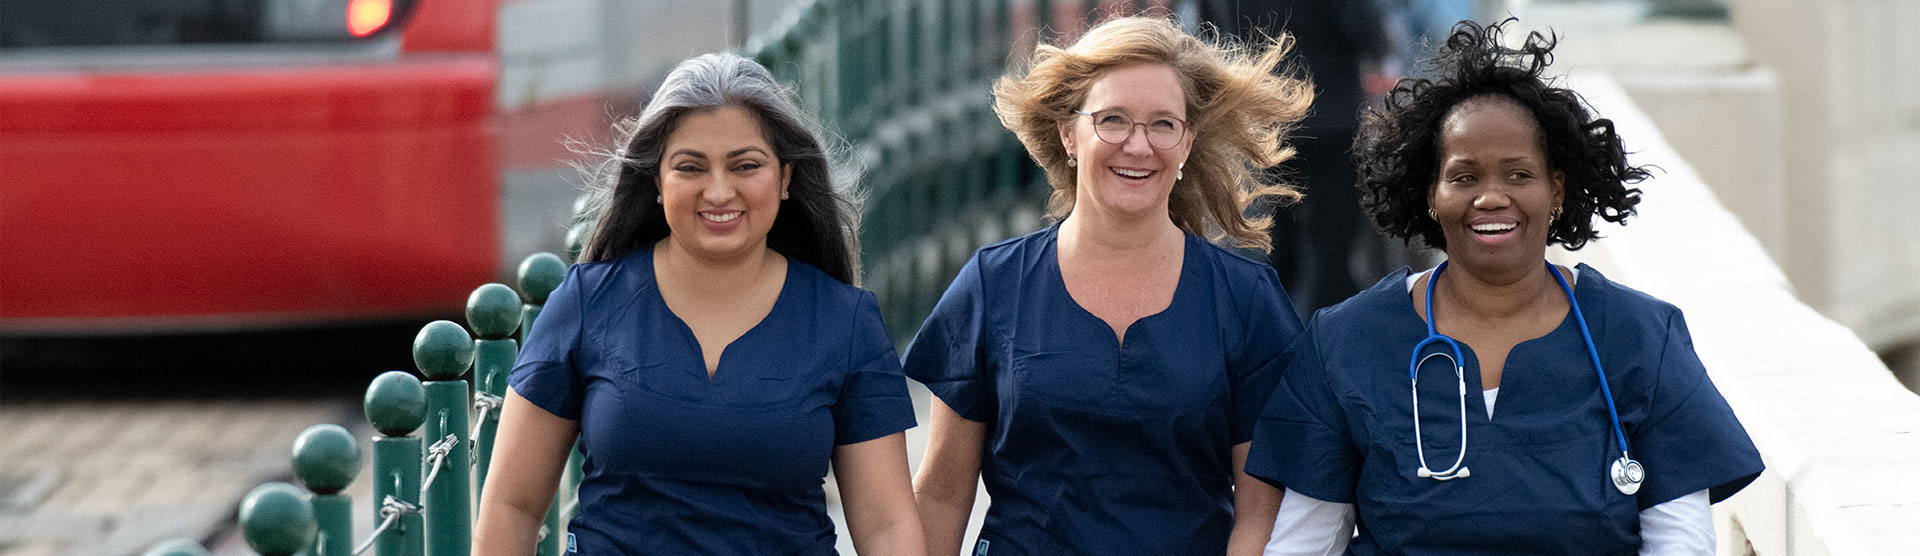 Three Women walking in scrubs